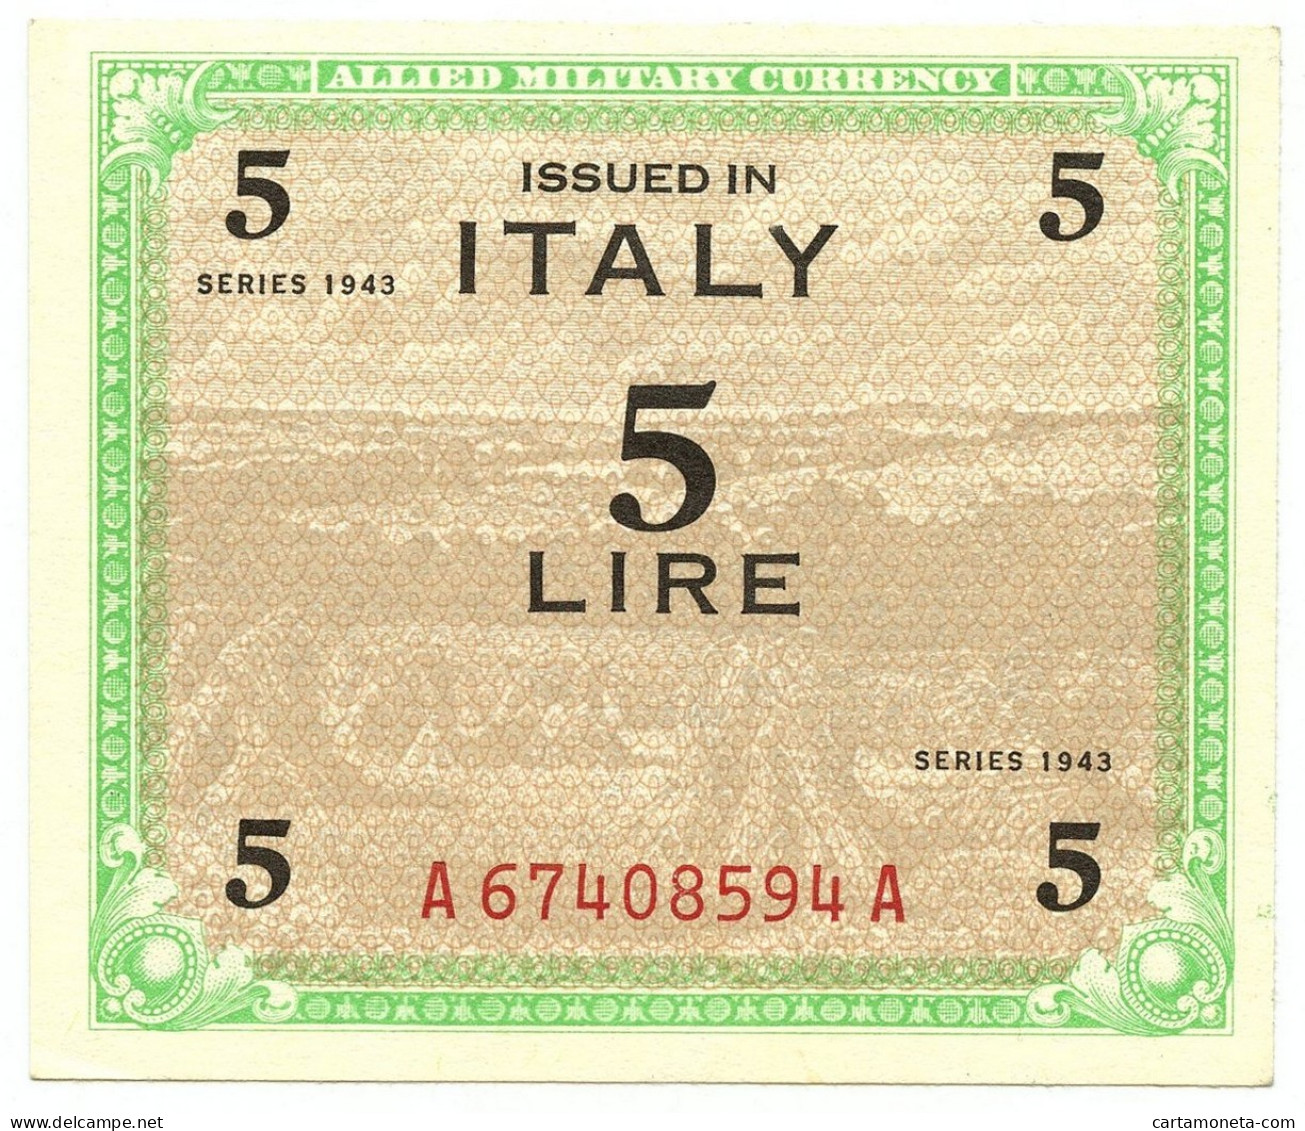 5 LIRE OCCUPAZIONE AMERICANA IN ITALIA MONOLINGUA FLC 1943 SUP+ - Occupazione Alleata Seconda Guerra Mondiale